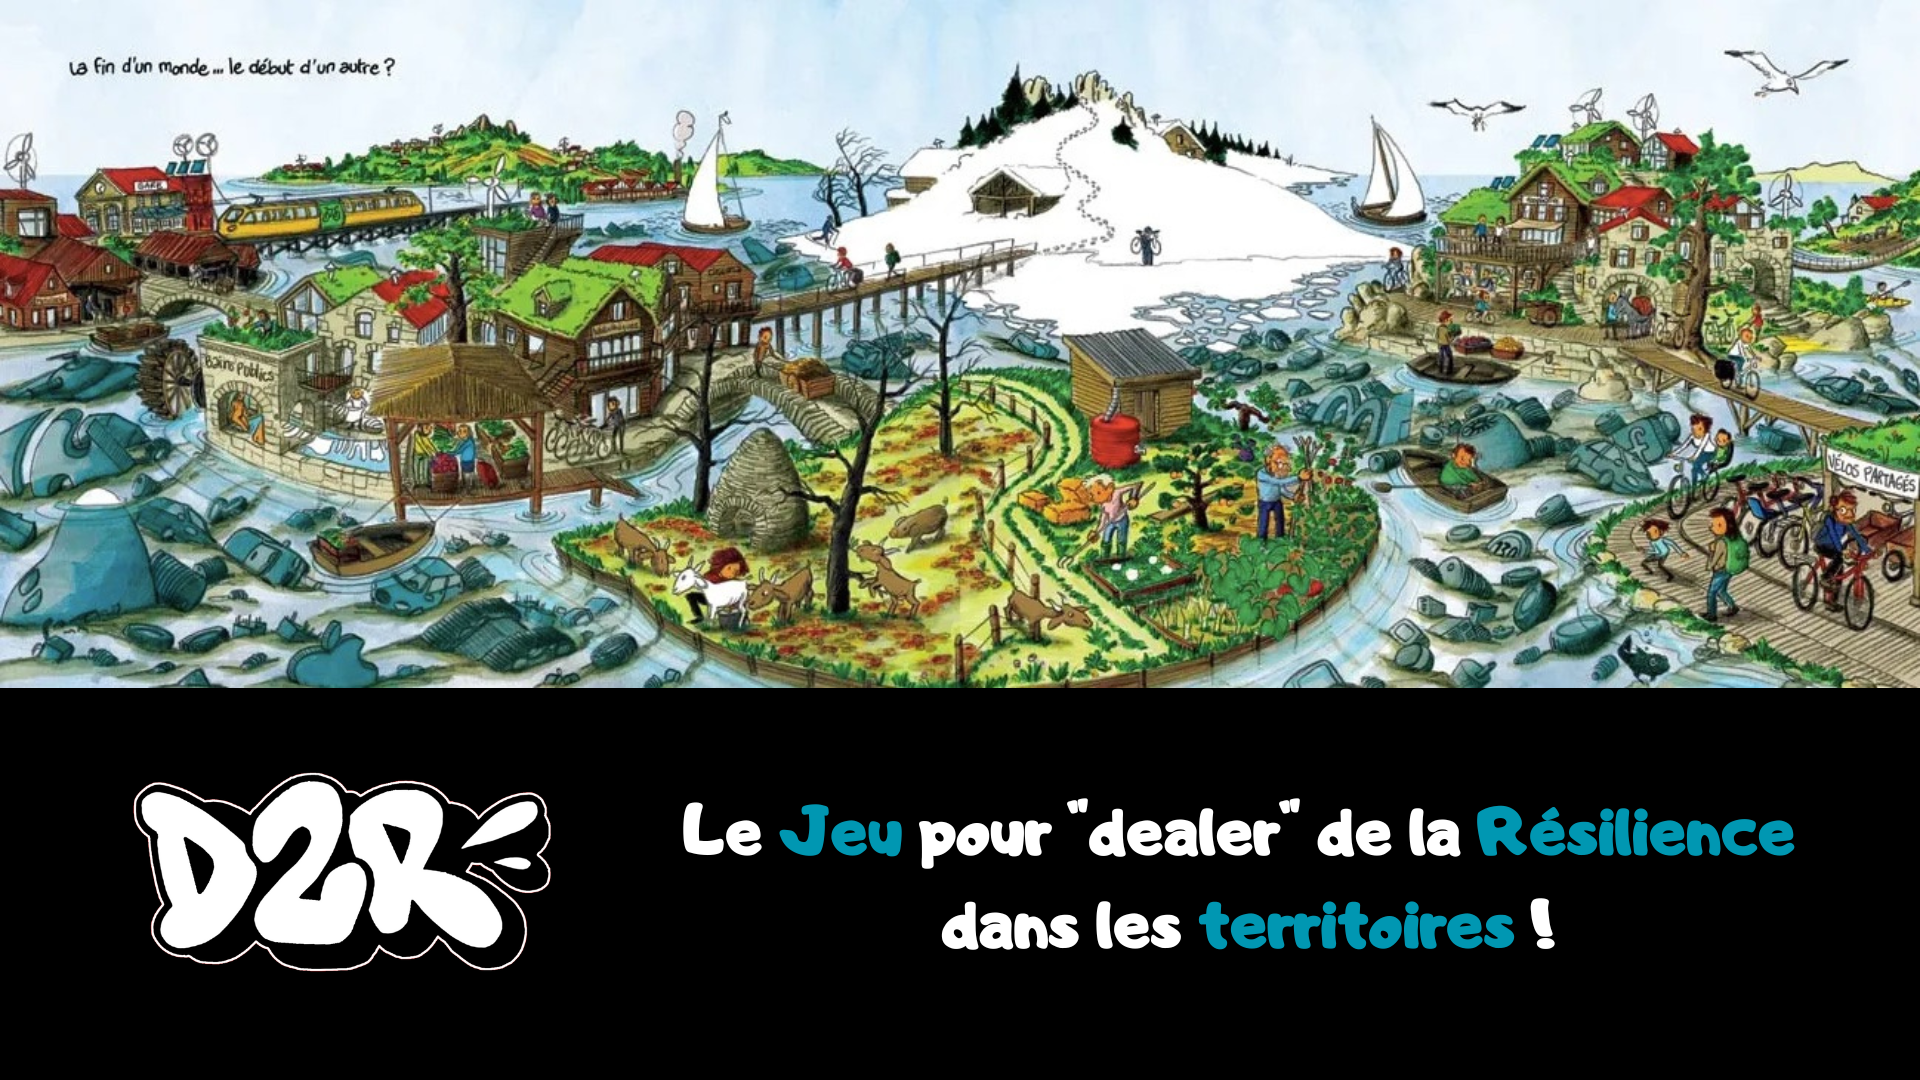 D2R - Le Jeu pour "dealer" de la résilience dans les territoires !